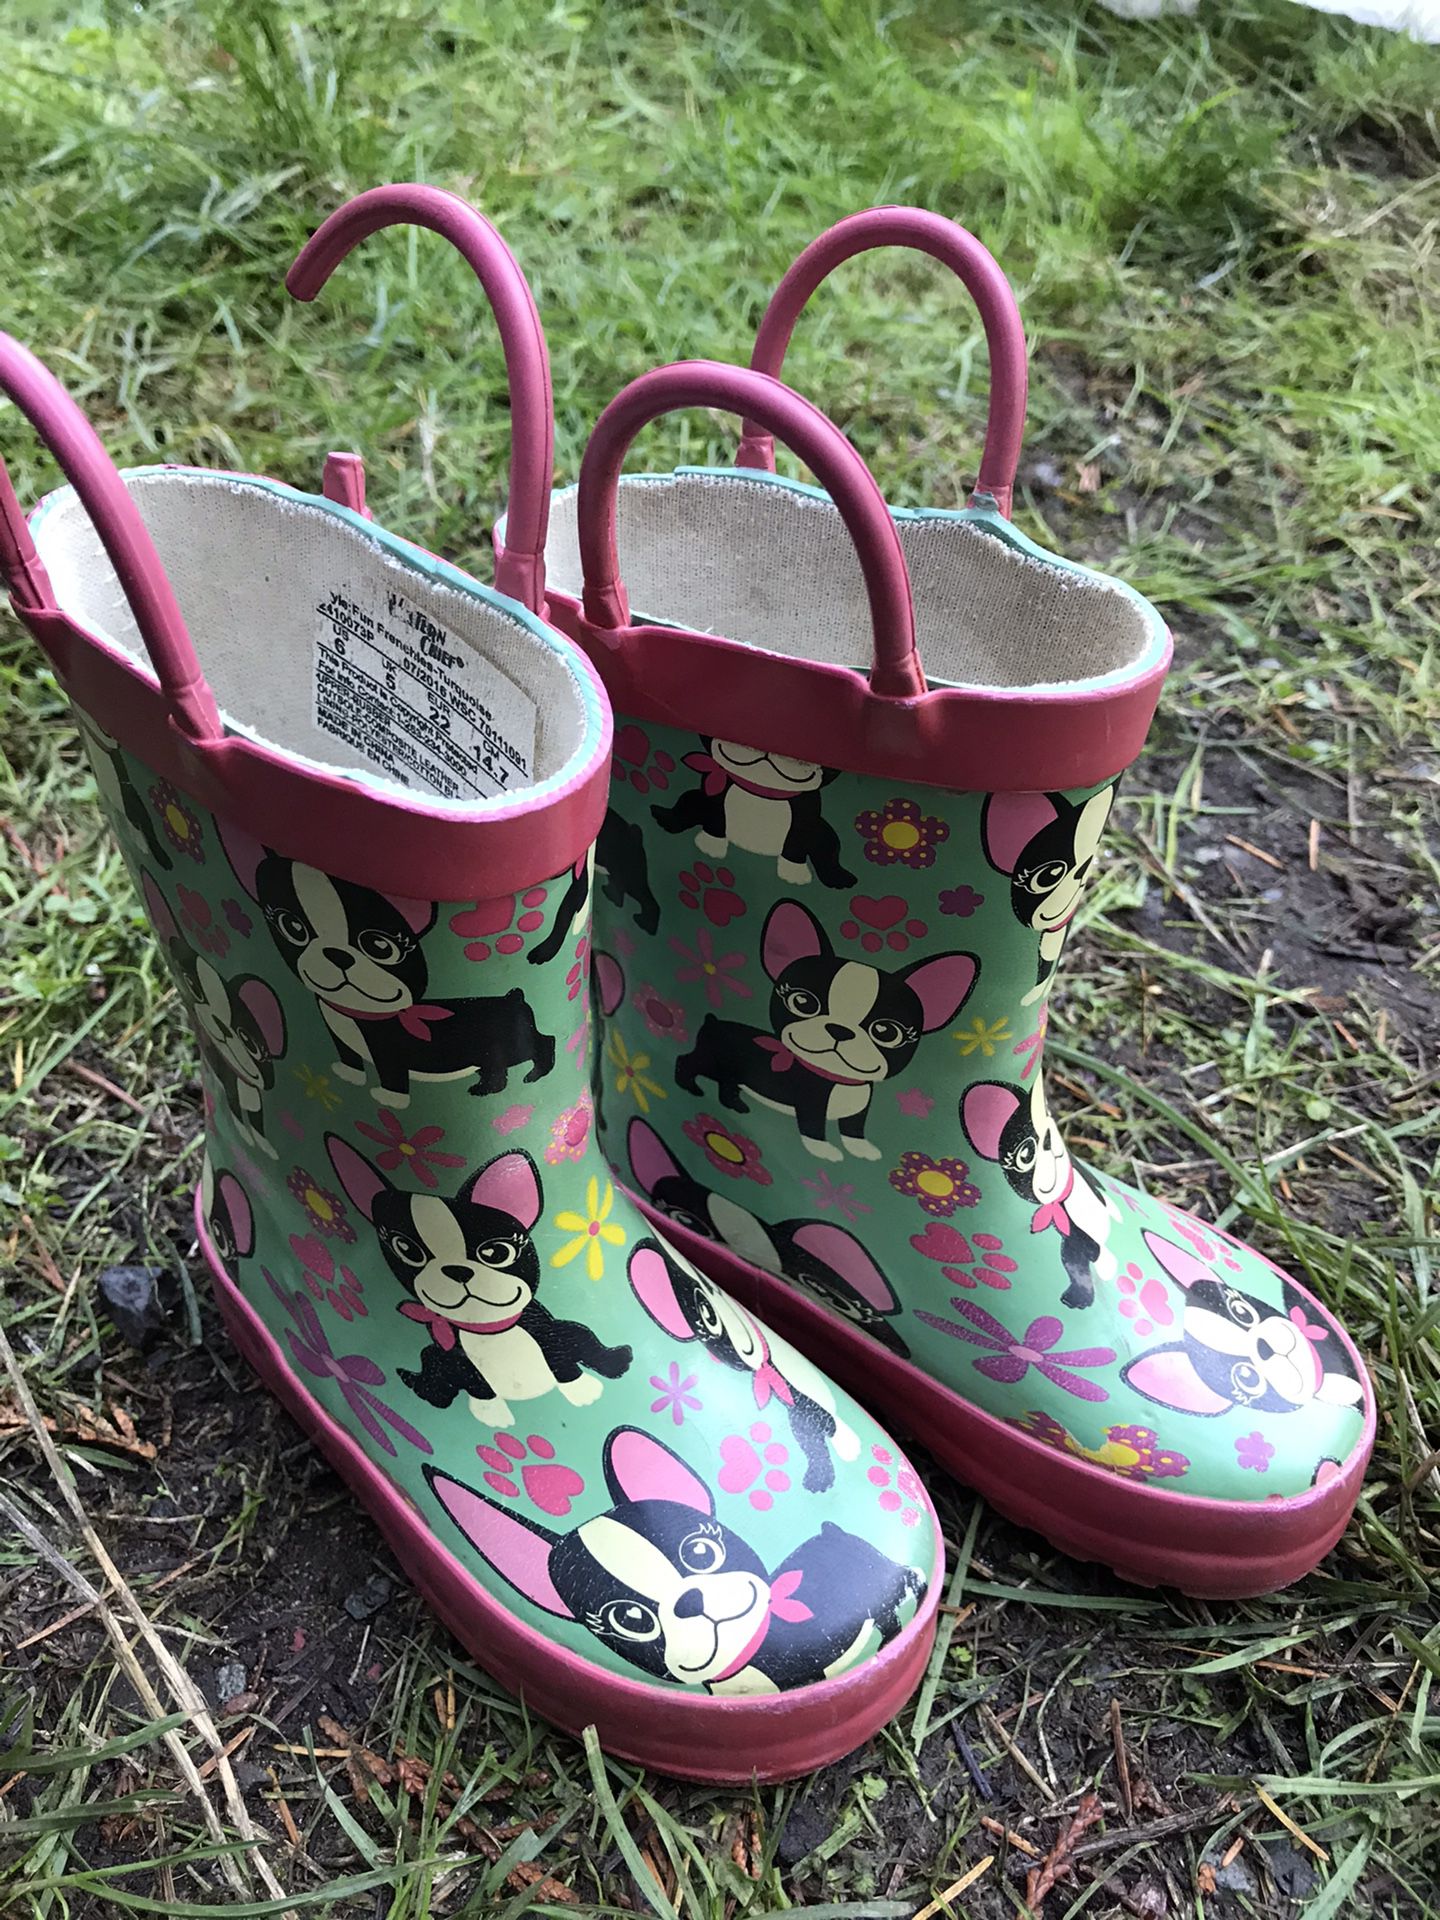 Size 6 rain boots